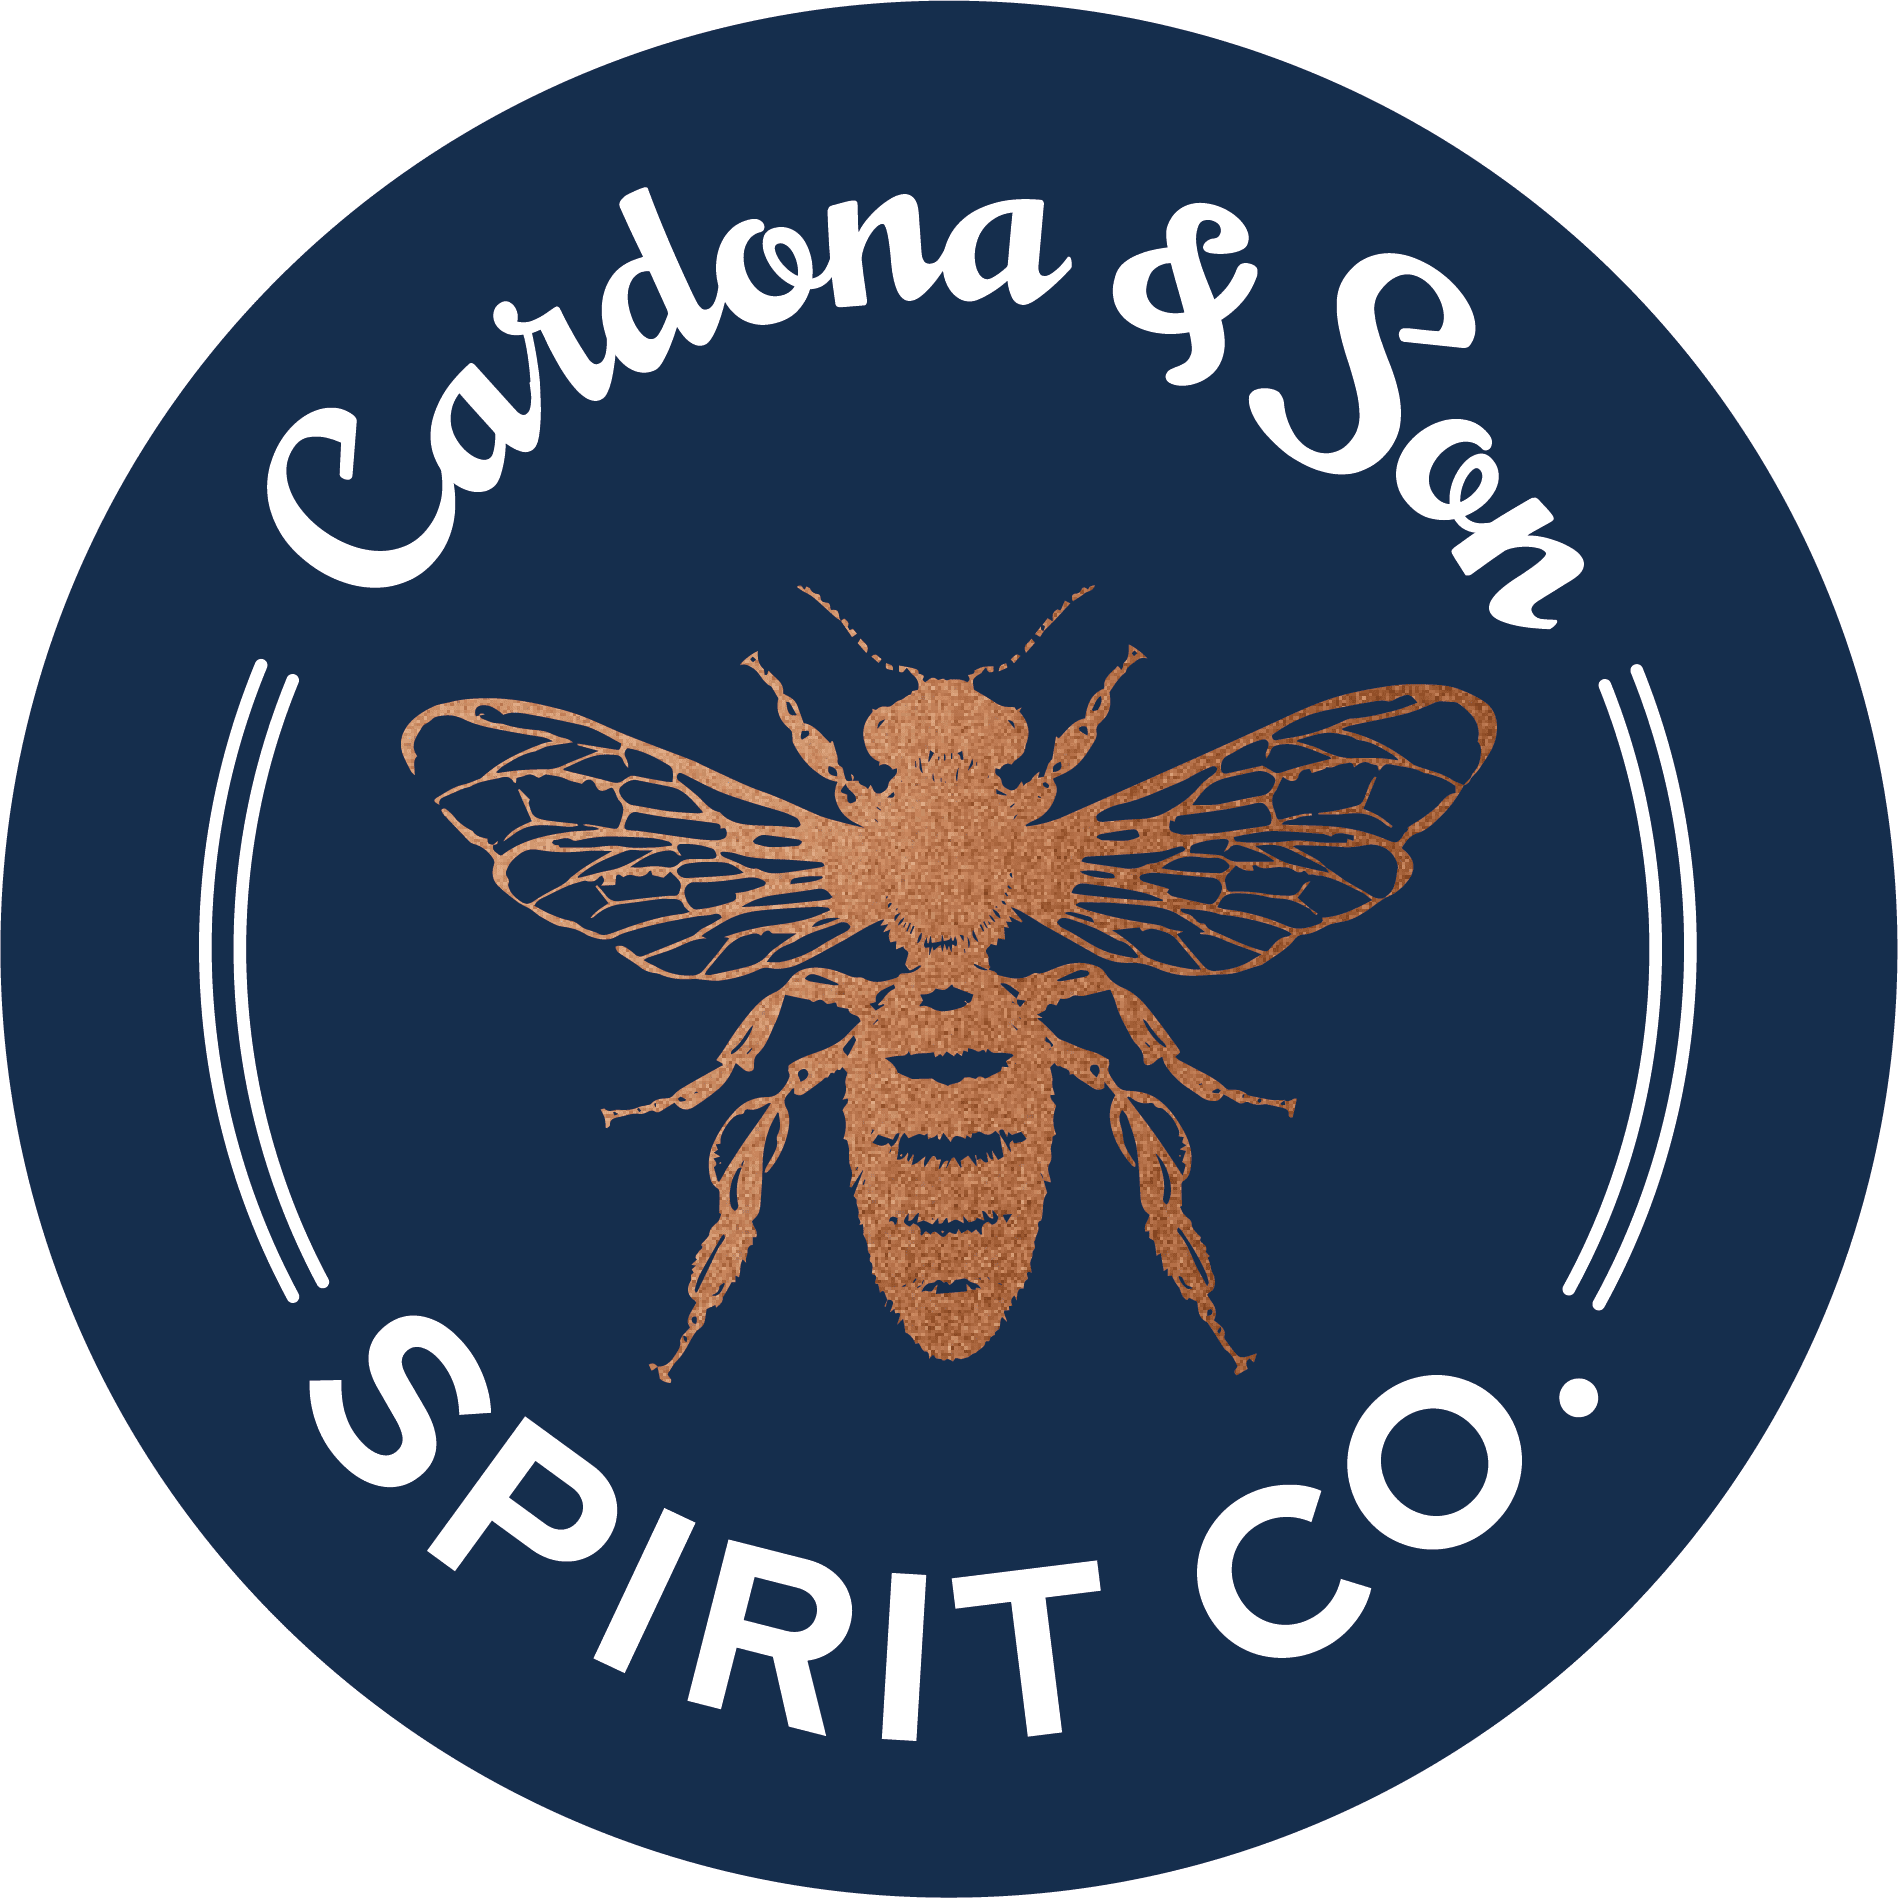 Cardona & Son Spirit Co